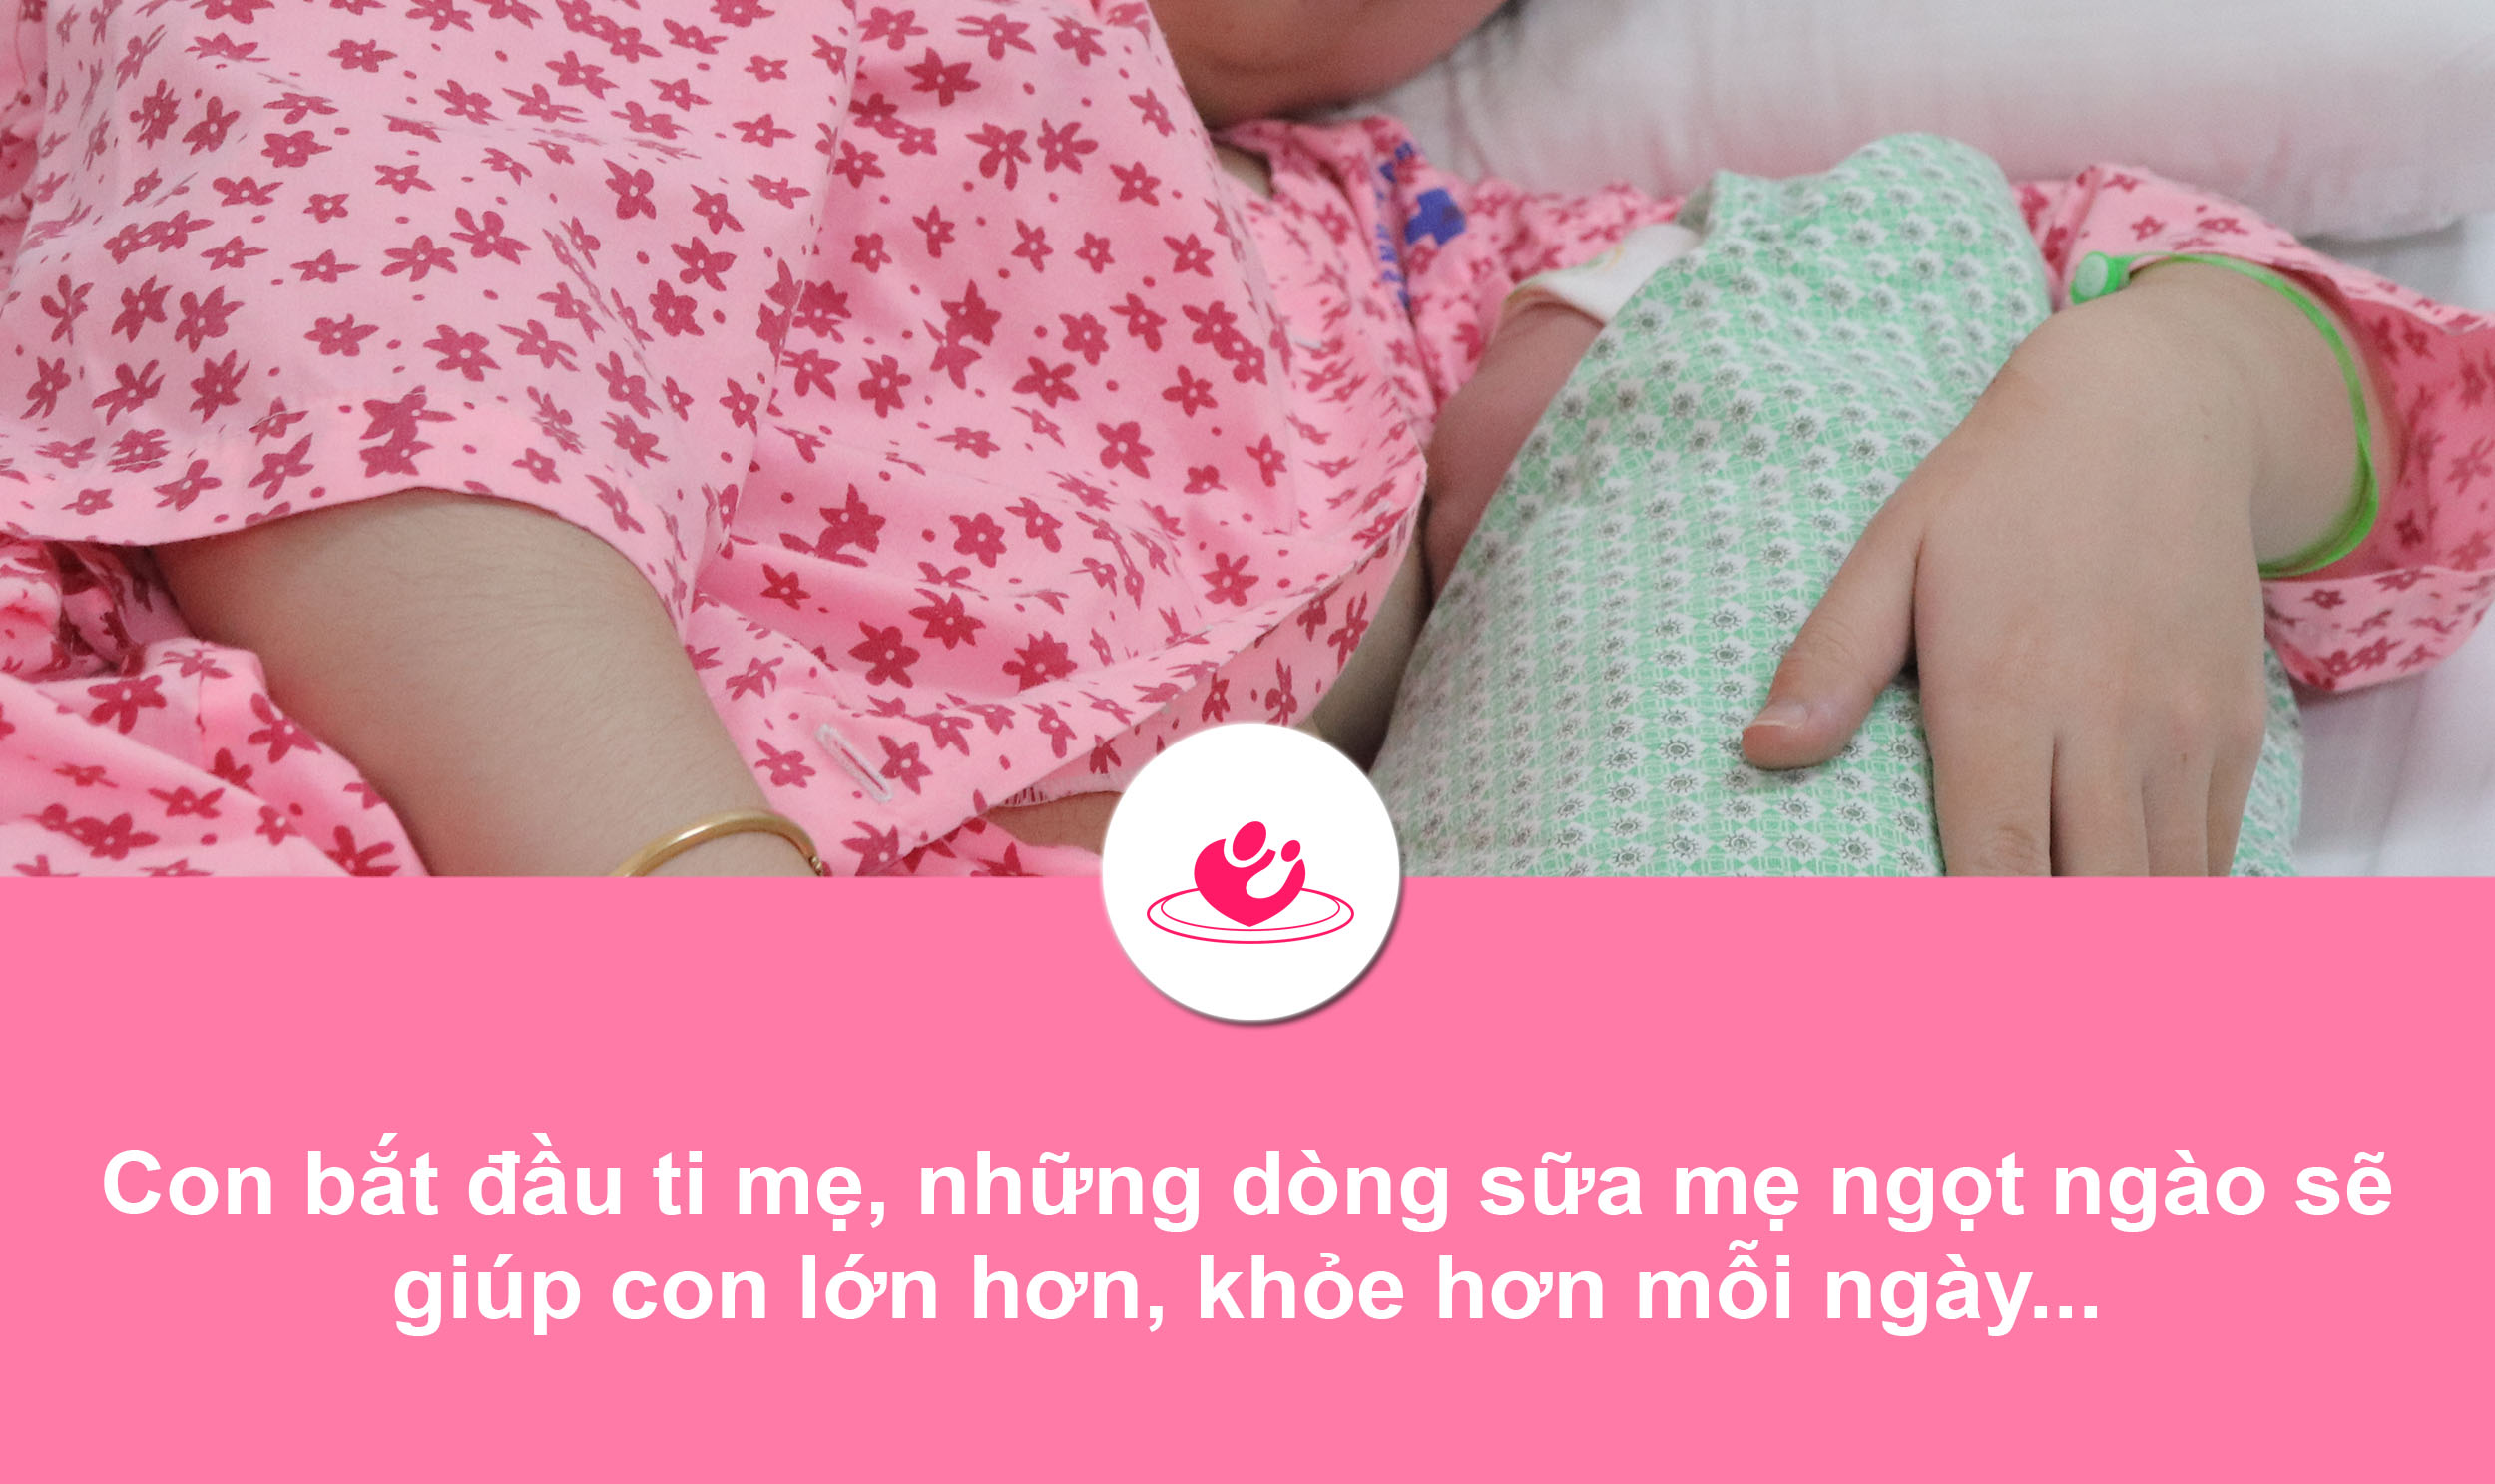 Những khoảnh khắc không thể quên của người mẹ khi sinh con ở Bệnh viện Phụ sản Hà Nội 12